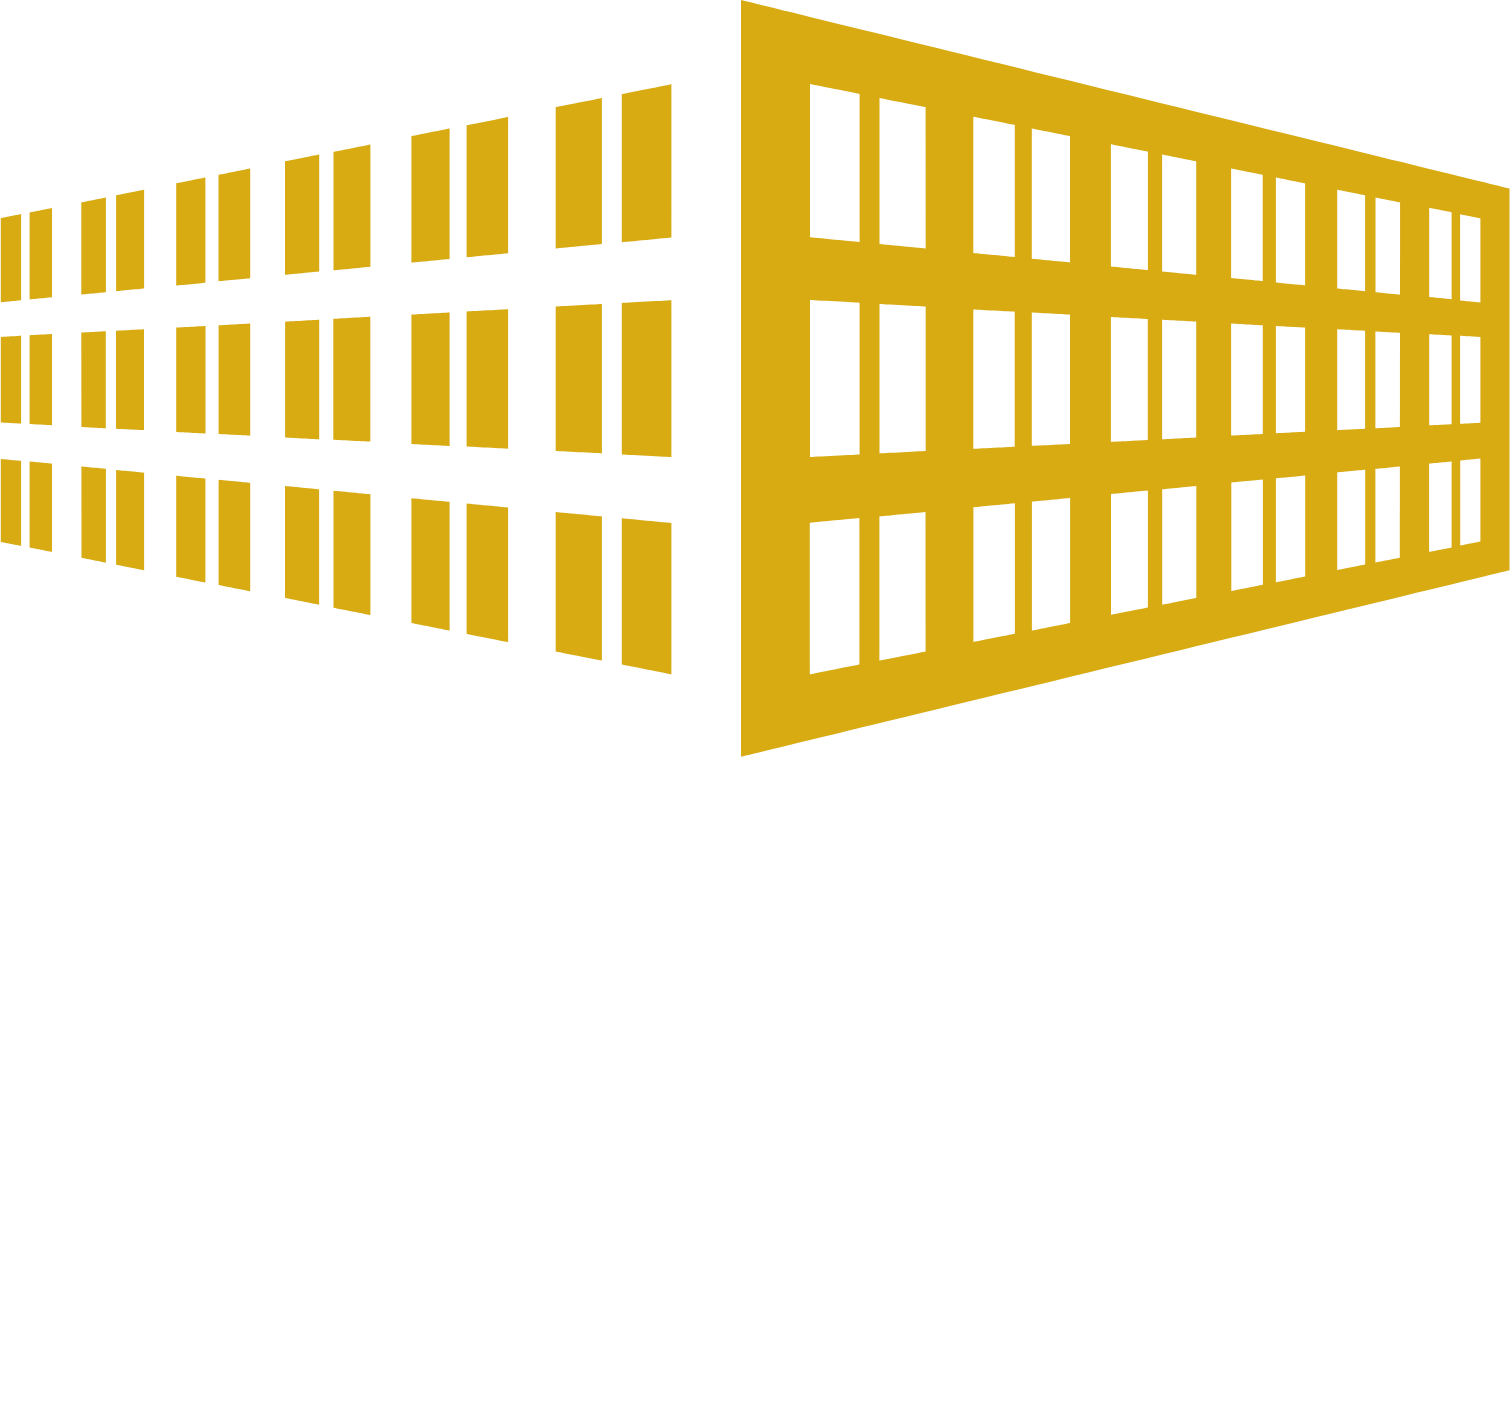 Jeudan logo large for dark backgrounds (transparent PNG)